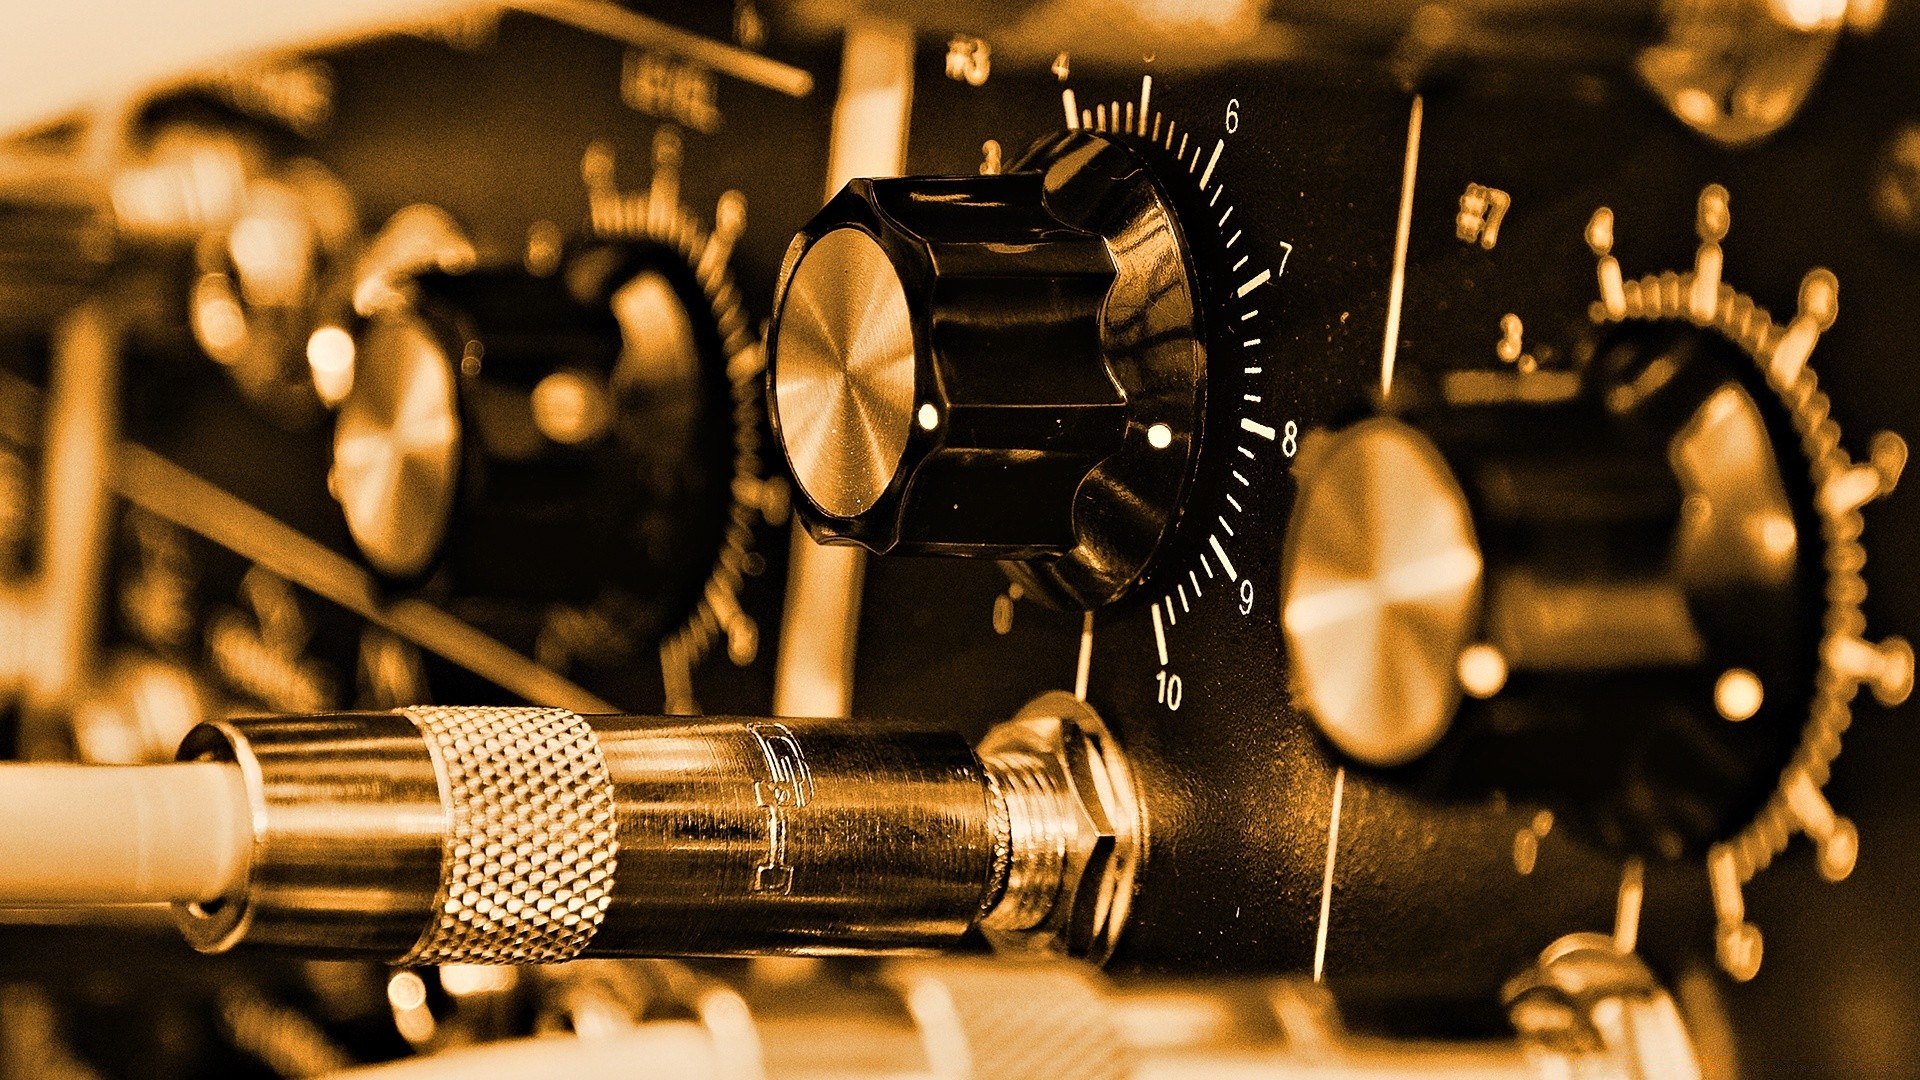 музыка инструмент технология аналог старый точность оборудование звук винтаж